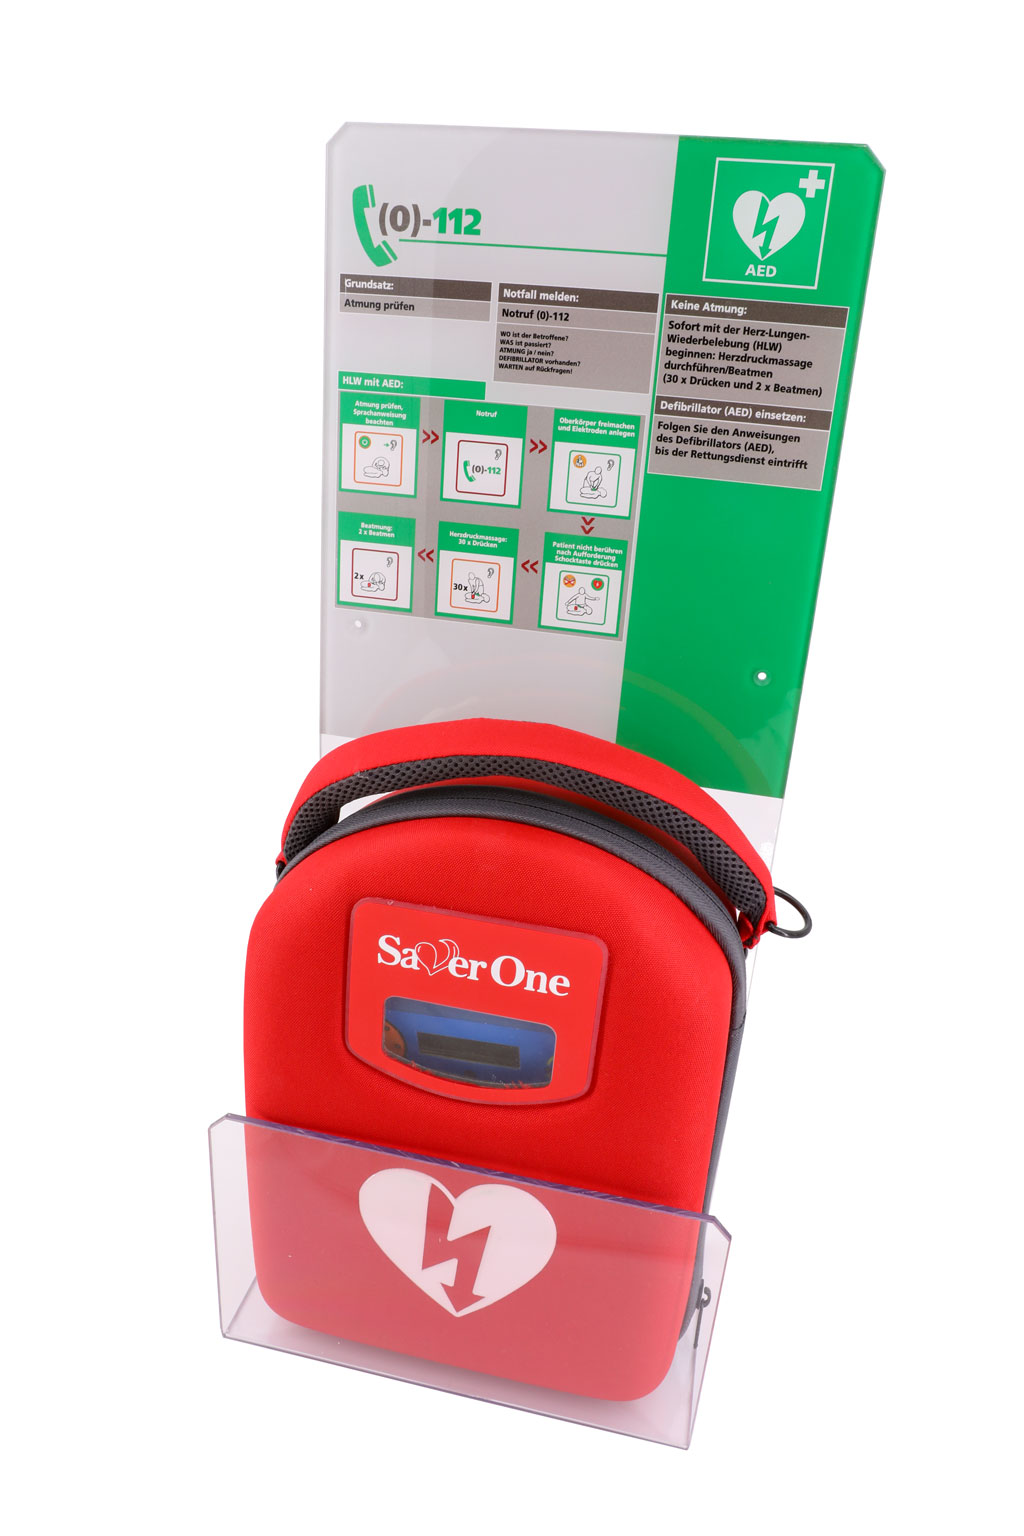 Design-Acrylglaswinkel mit Erste-Hilfe-Tafel (DGUV) für alle Defibrillator Marken